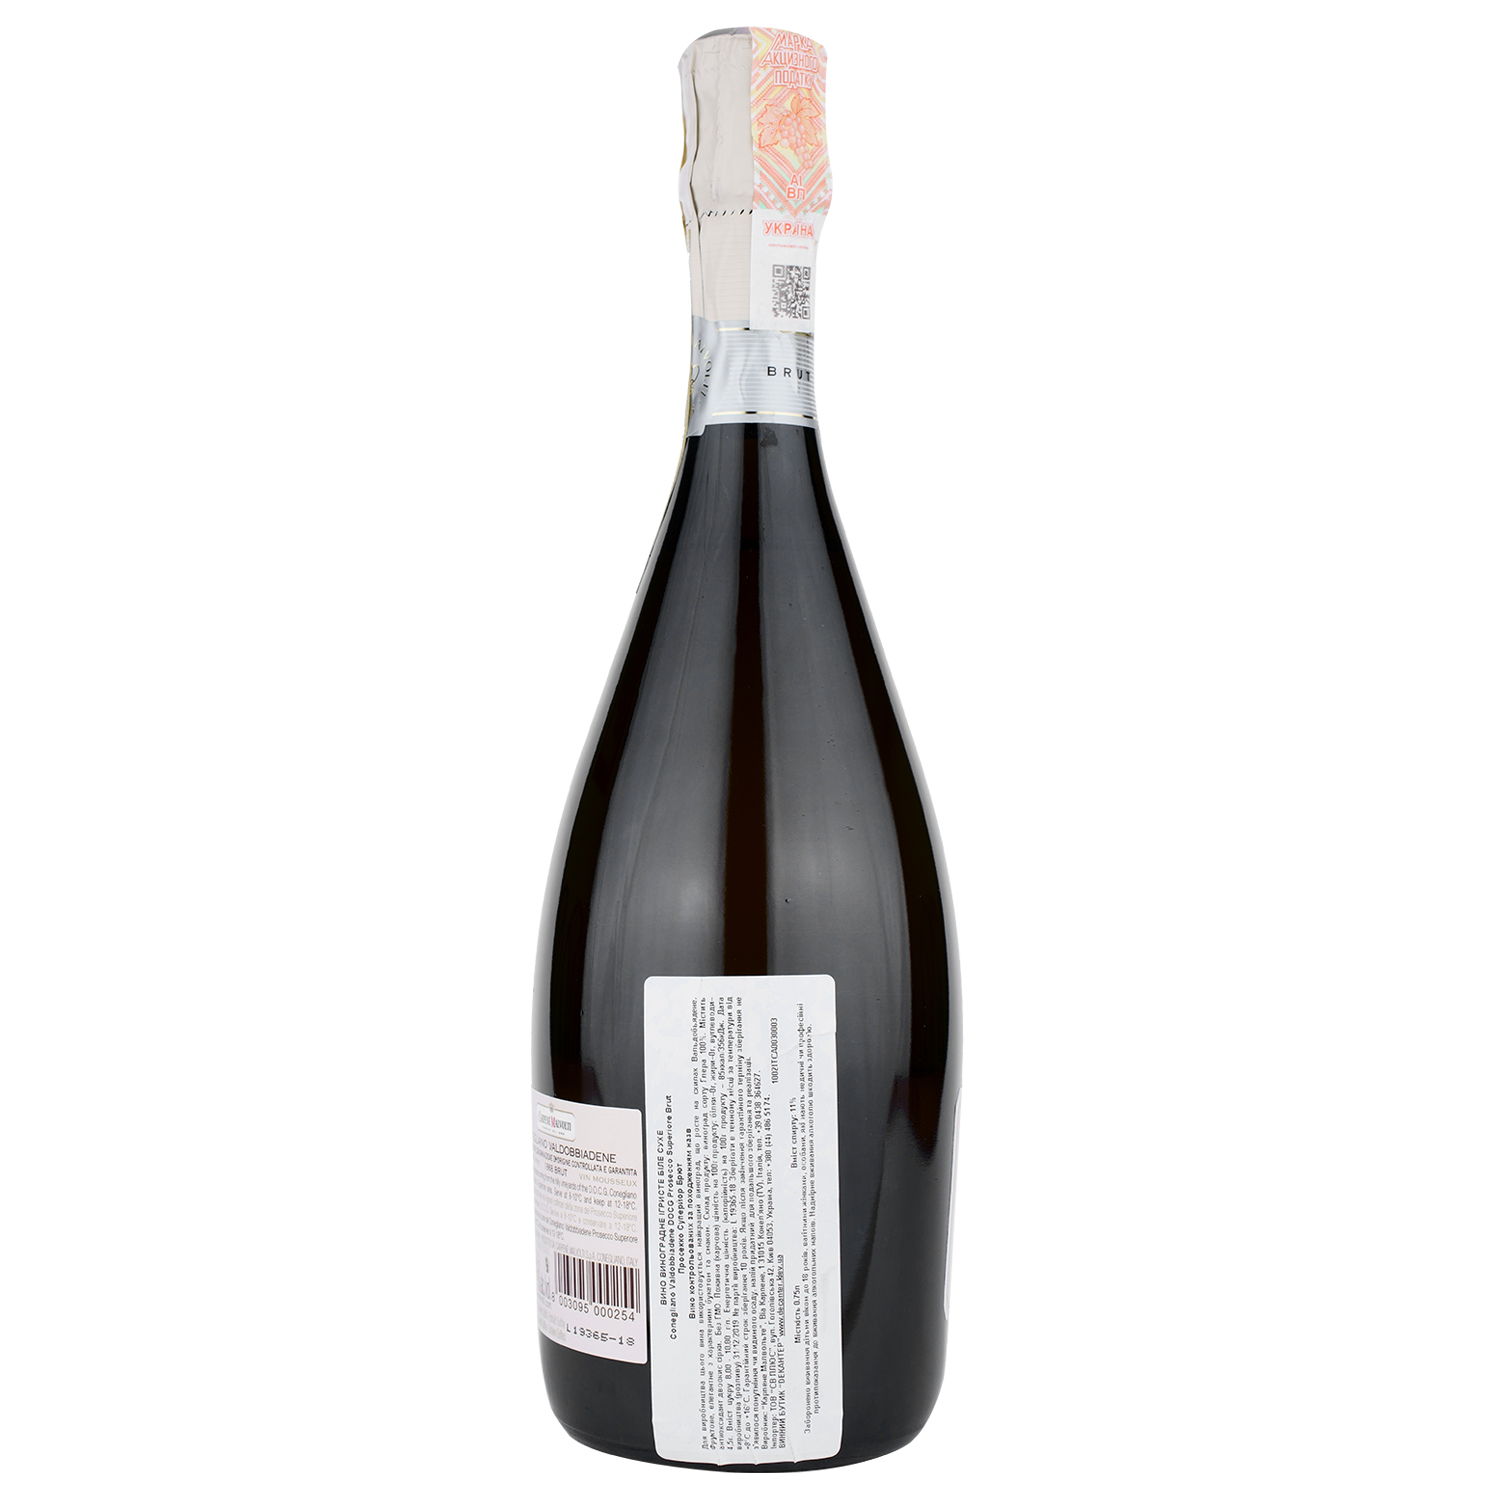 Игристое вино Carpene Malvolti Prosecco Superiore Coneglano Valdobbiadene Brut DOCG, белое, брют, 0,75 л - фото 3